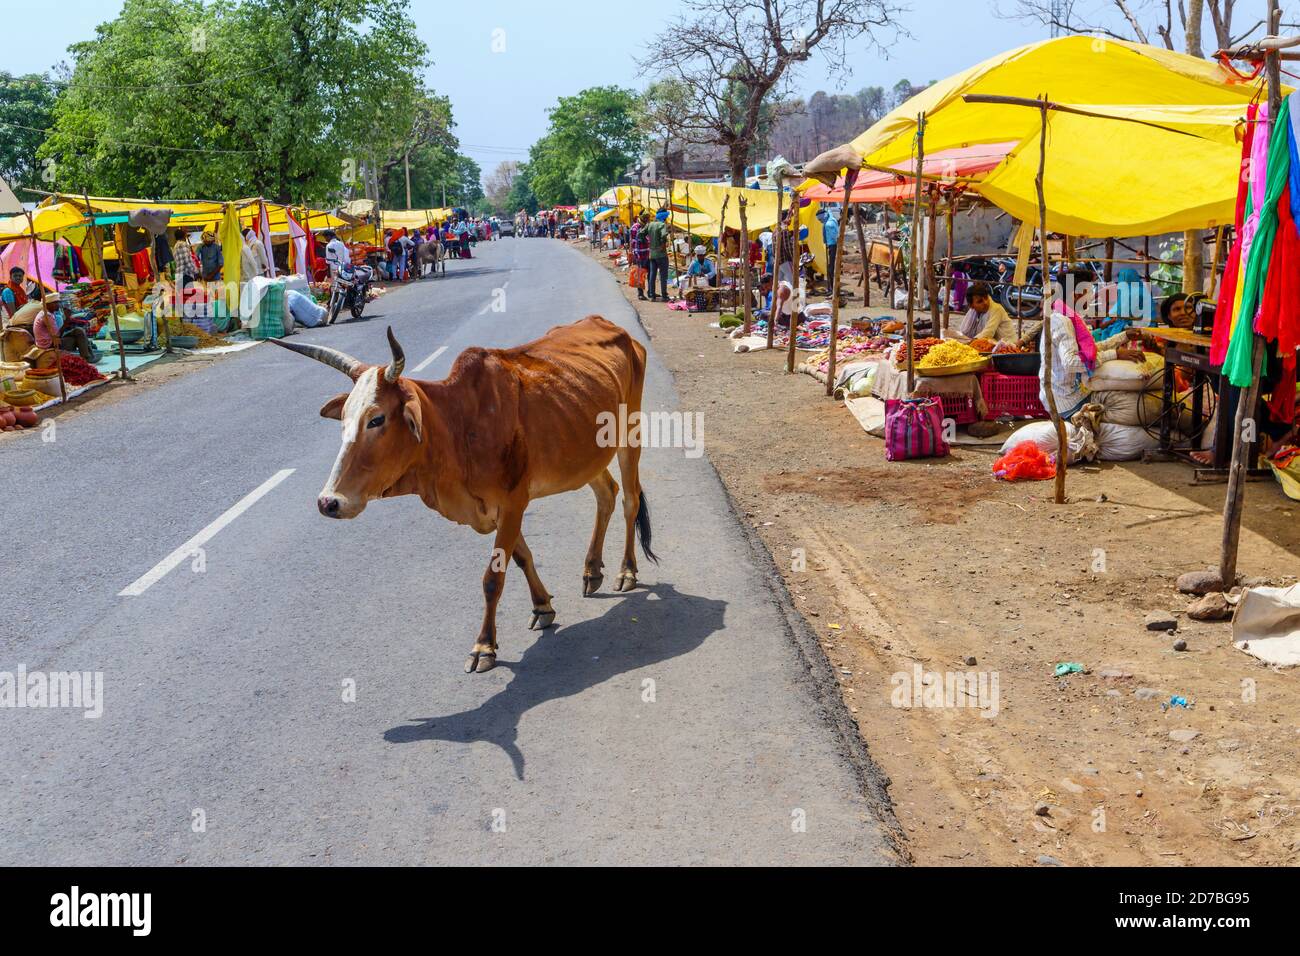 Typische Straßenszene: Kuh, die auf der Straße durch Stände geht, die lokale Lebensmittel verkaufen, auf einem belebten Straßenmarkt in einem Dorf in Madhya Pradesh, Indien Stockfoto